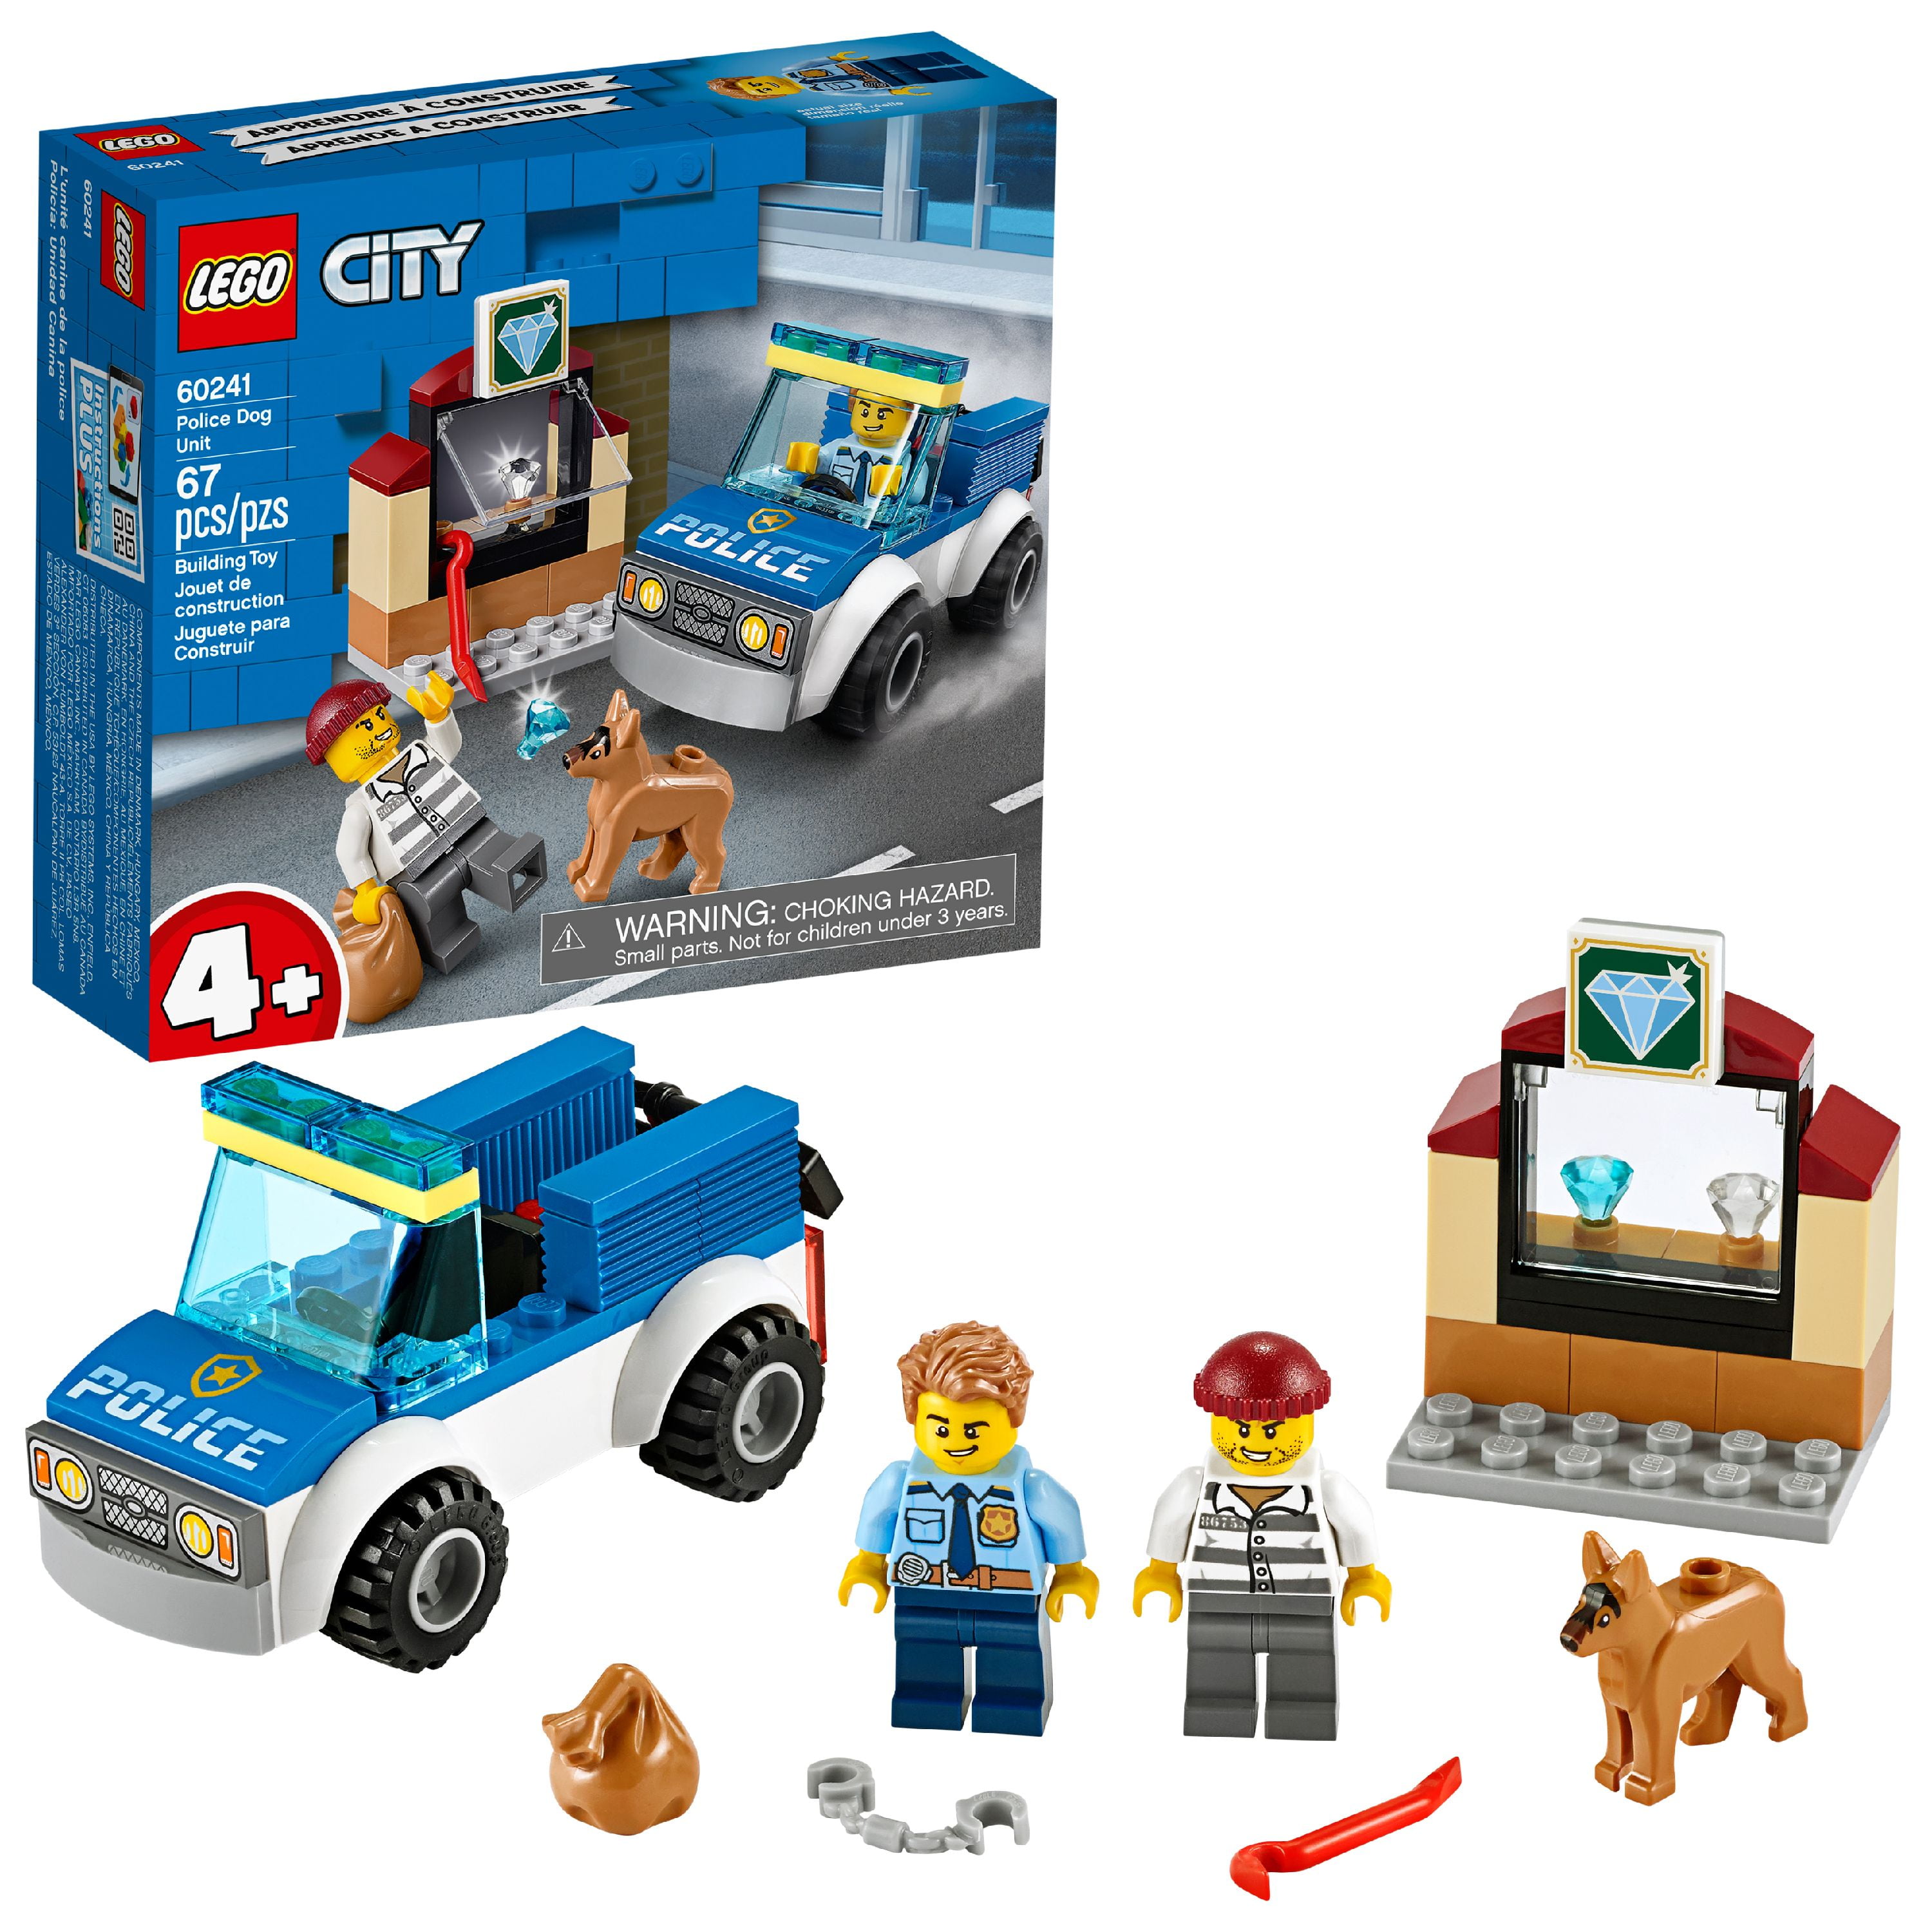 LEGO City Police Dog 60241 Building Set for Kids (67 Pieces) - Walmart.com